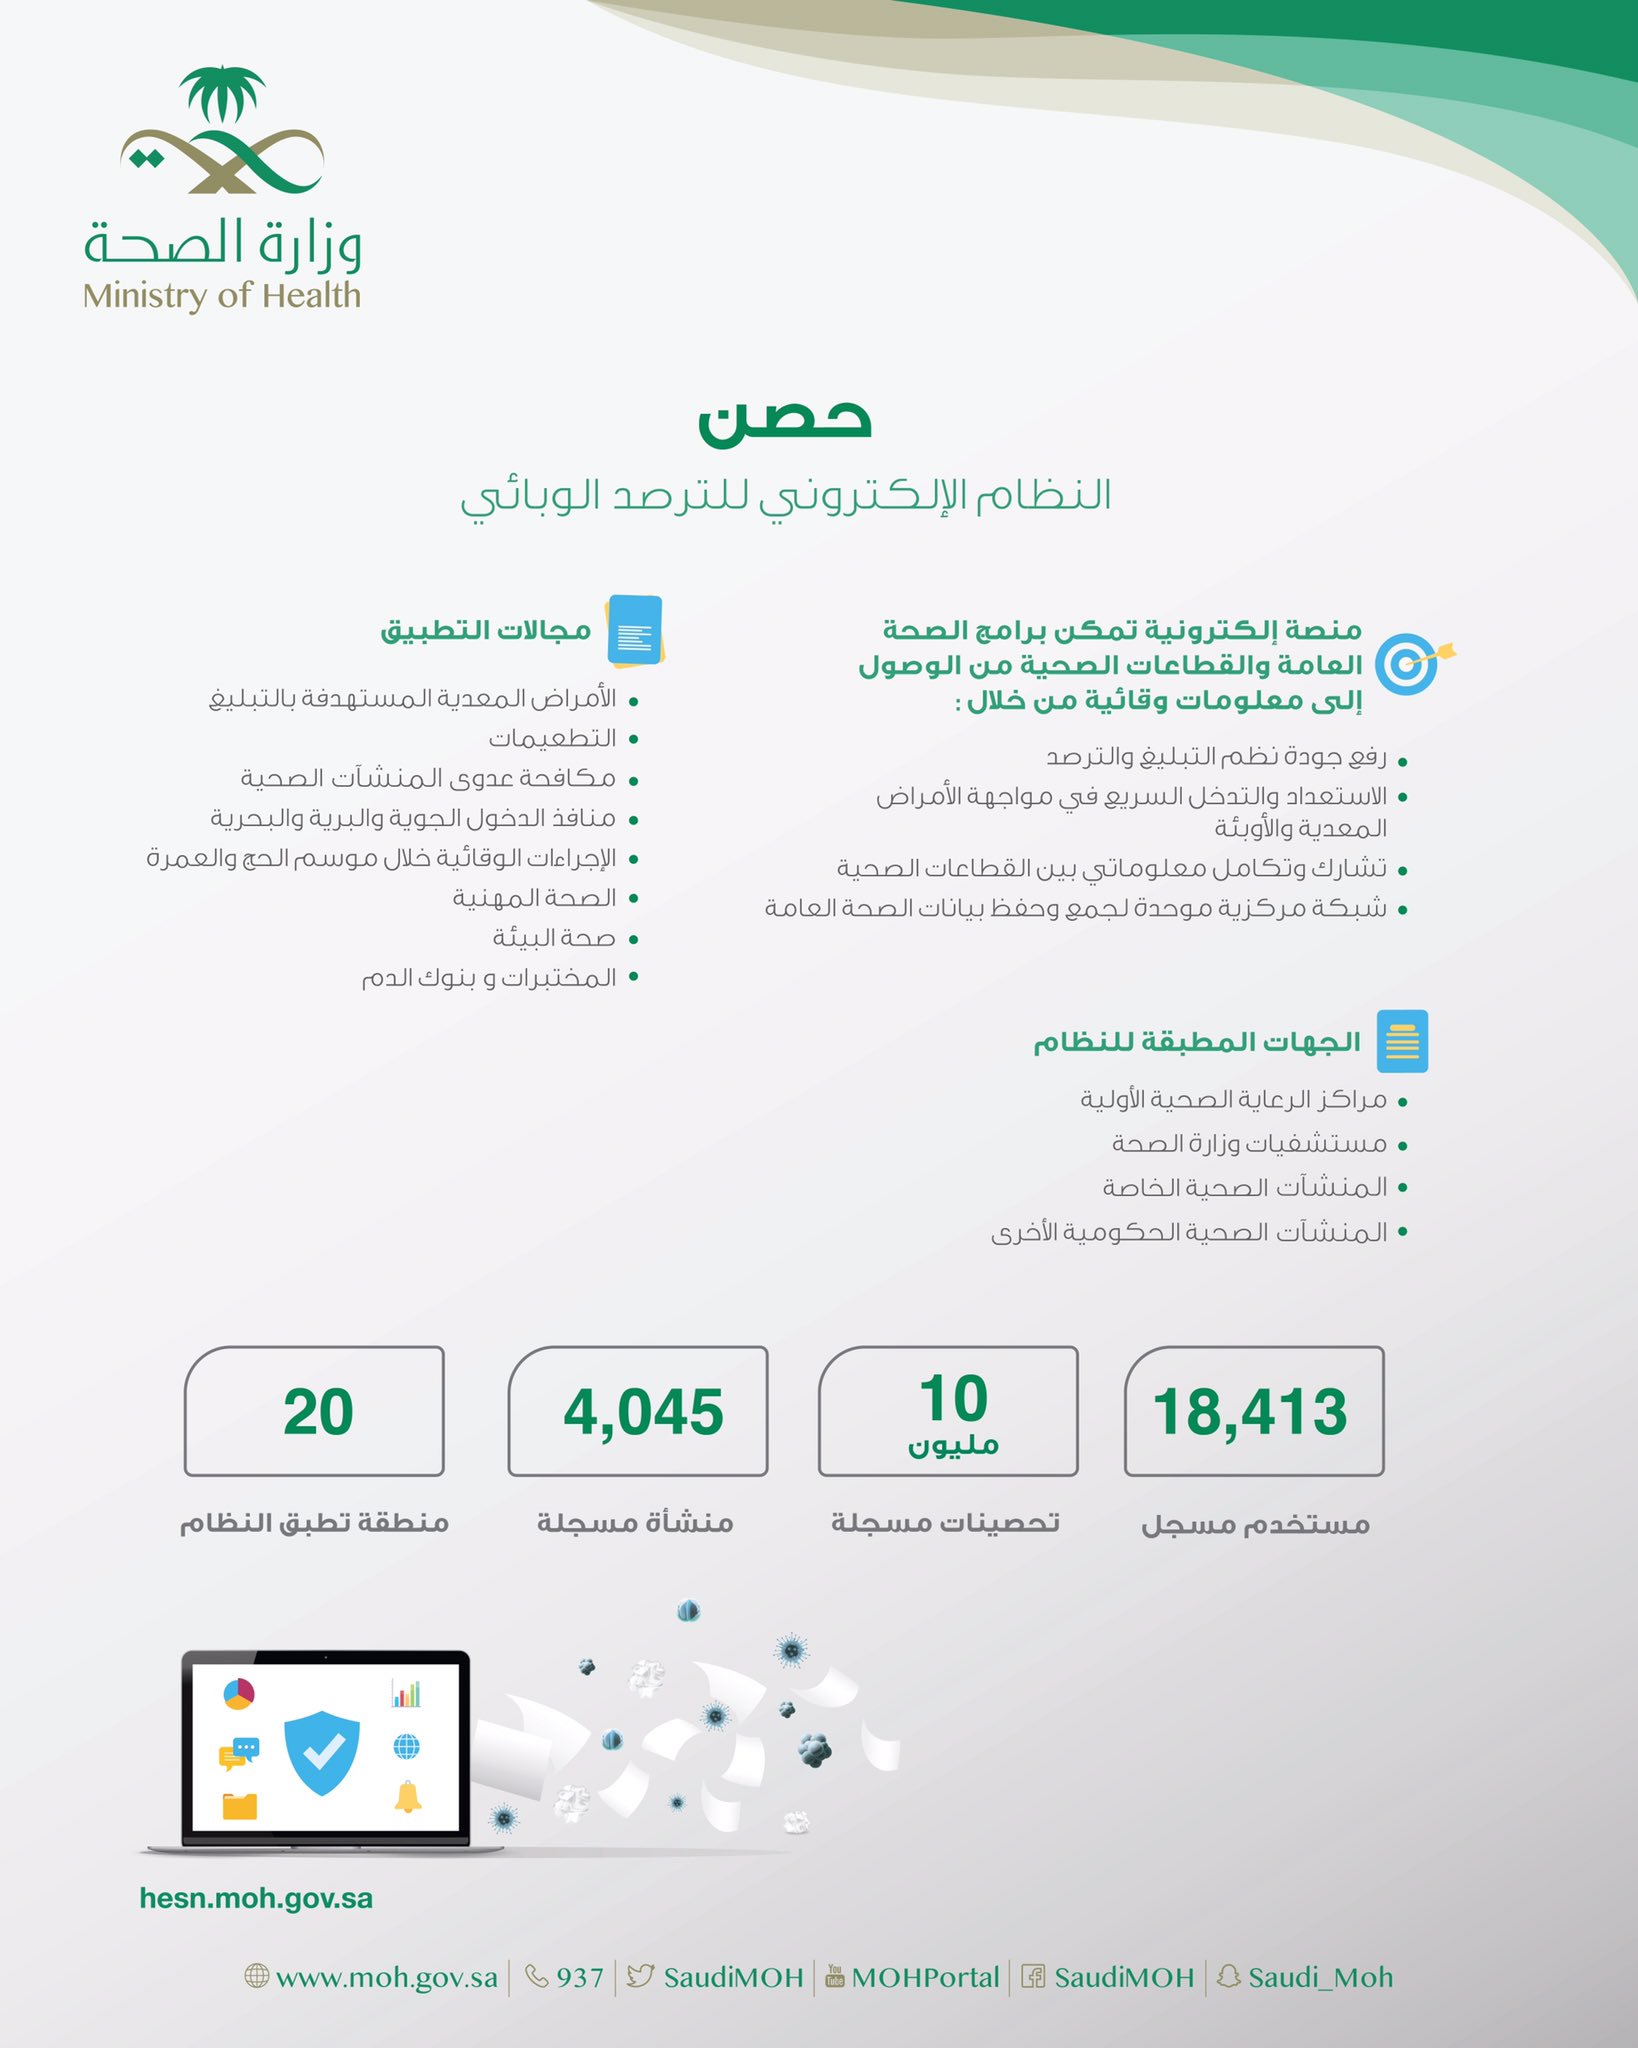 وزارة الصحة السعودية On Twitter يساهم نظامحصن في المحافظة على الصحة